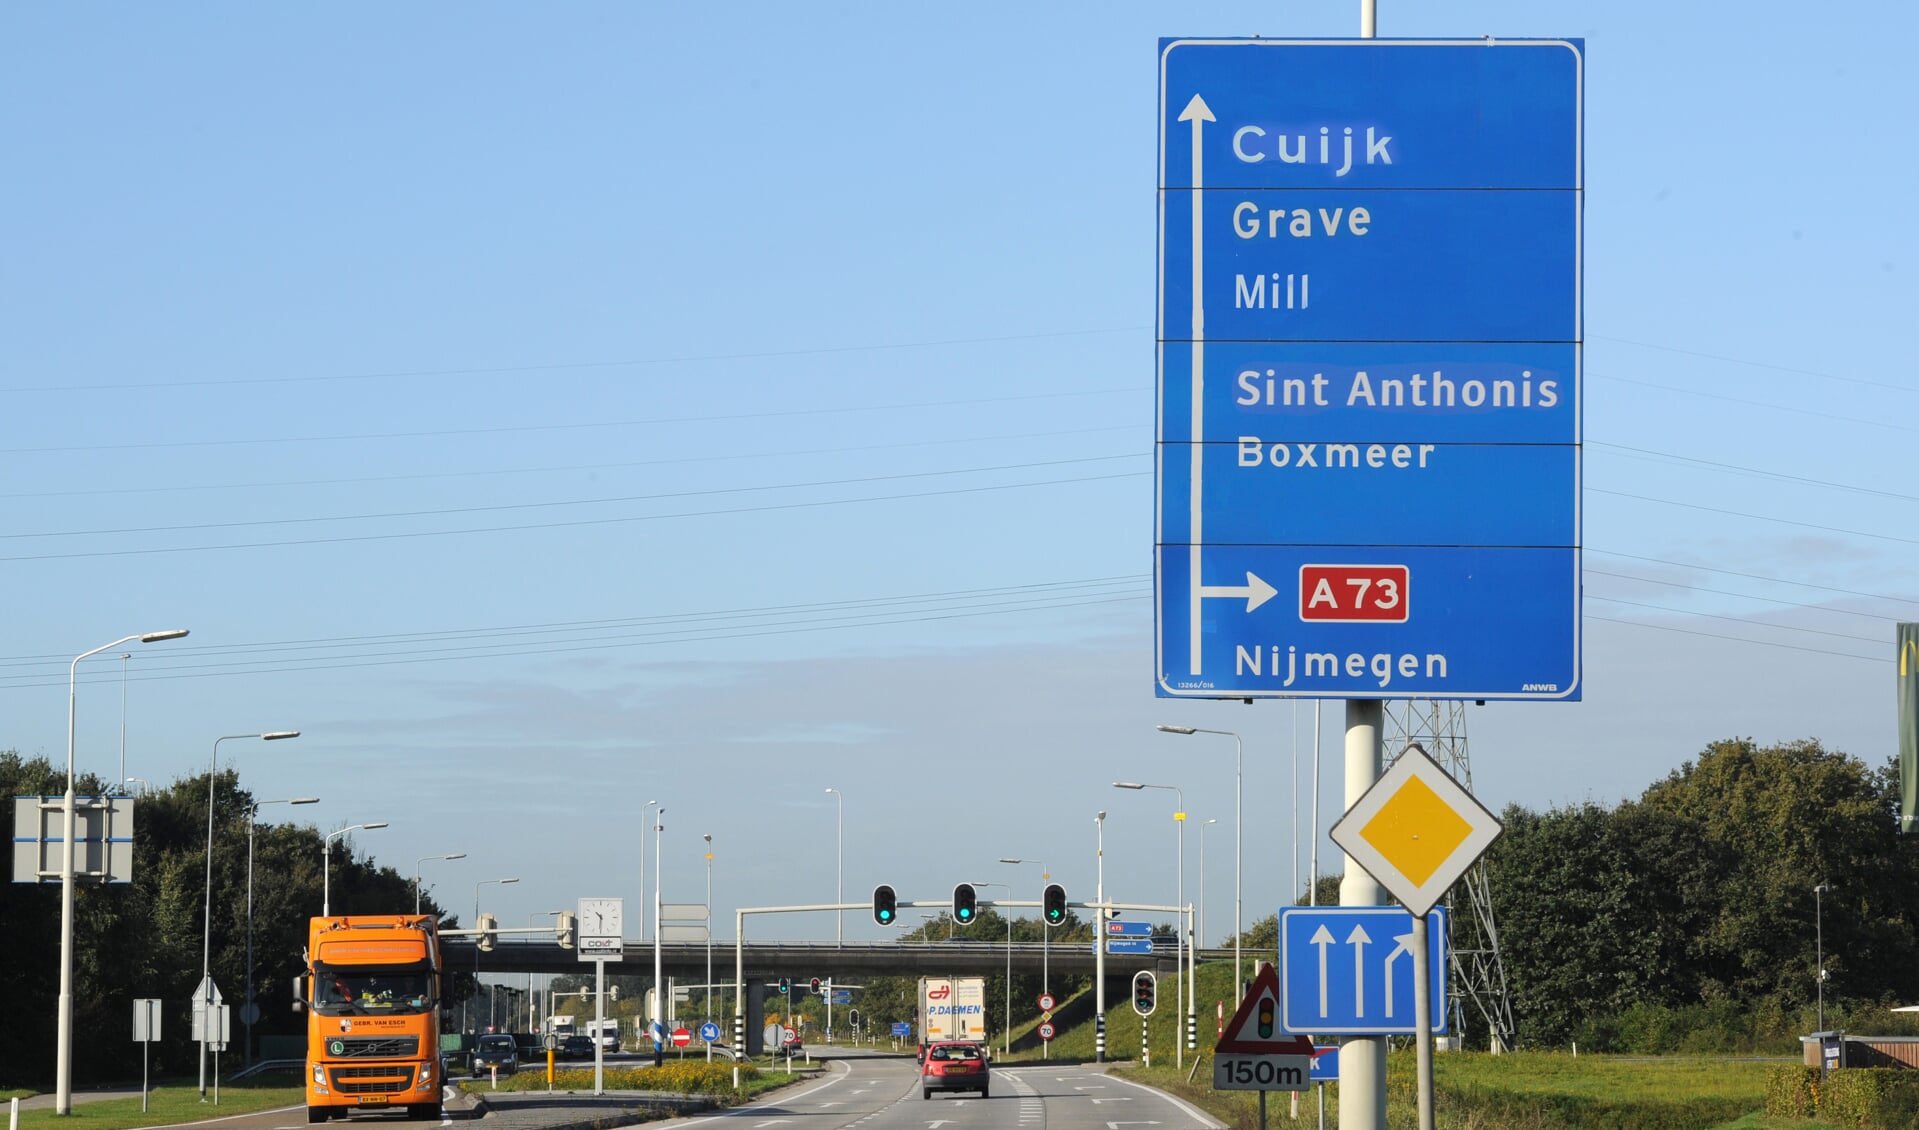 Op naar één Land van Cuijk, vindt de provincie Noord-Brabant. Foto: Ed van Alem